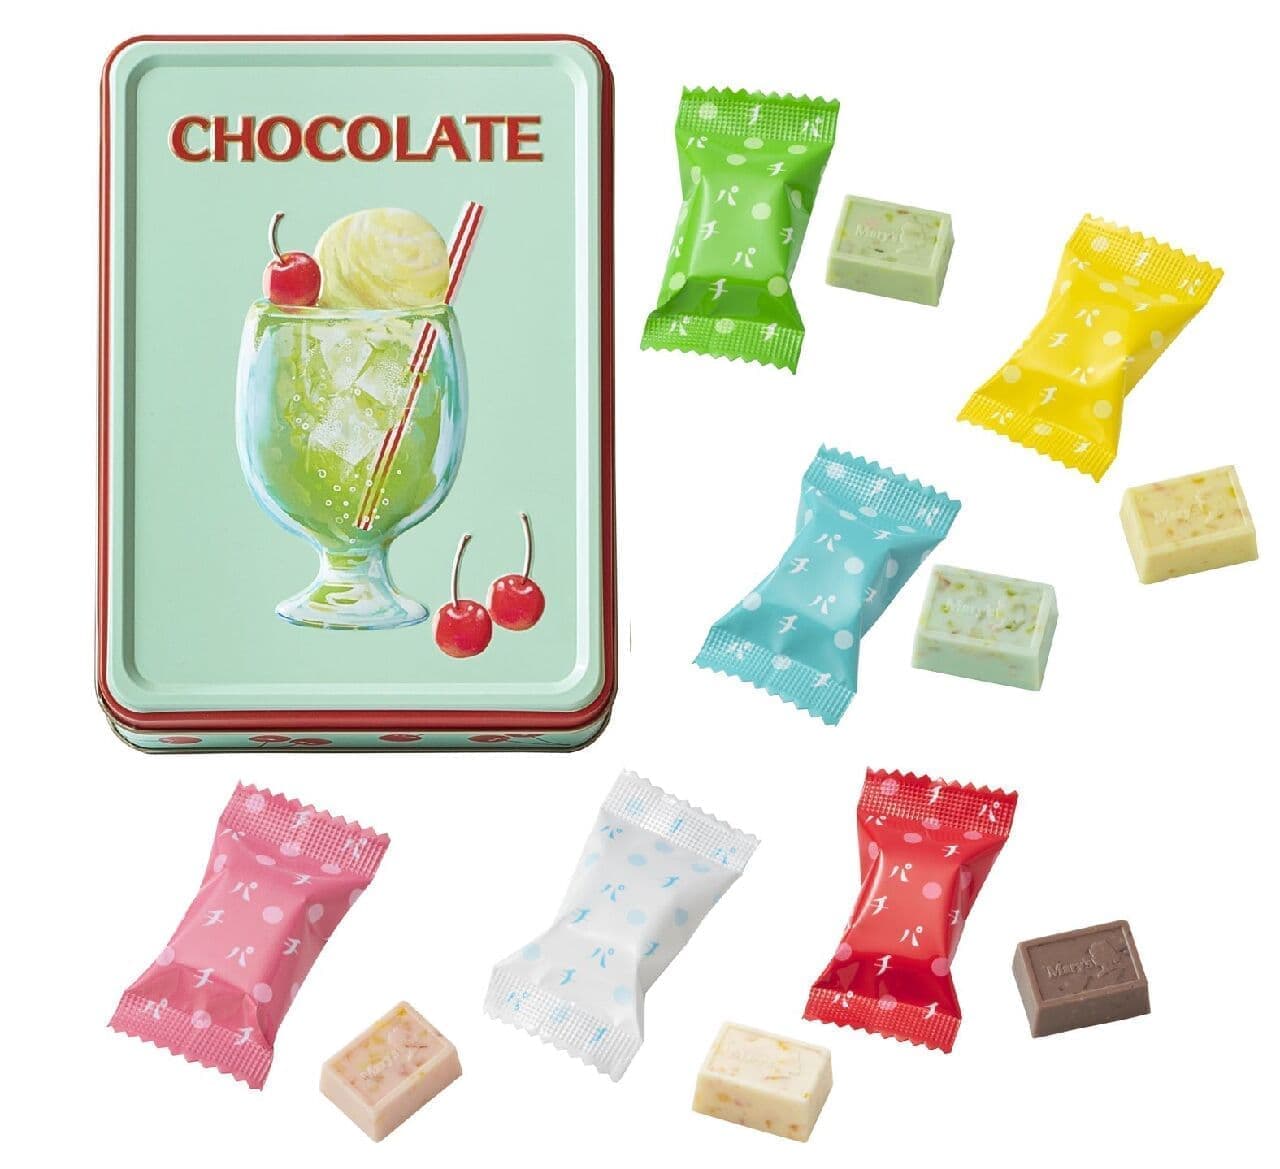 オンライン限定 メリー × 古川紙工 はじけるキャンディチョコレート。オリジナルコラボBOX